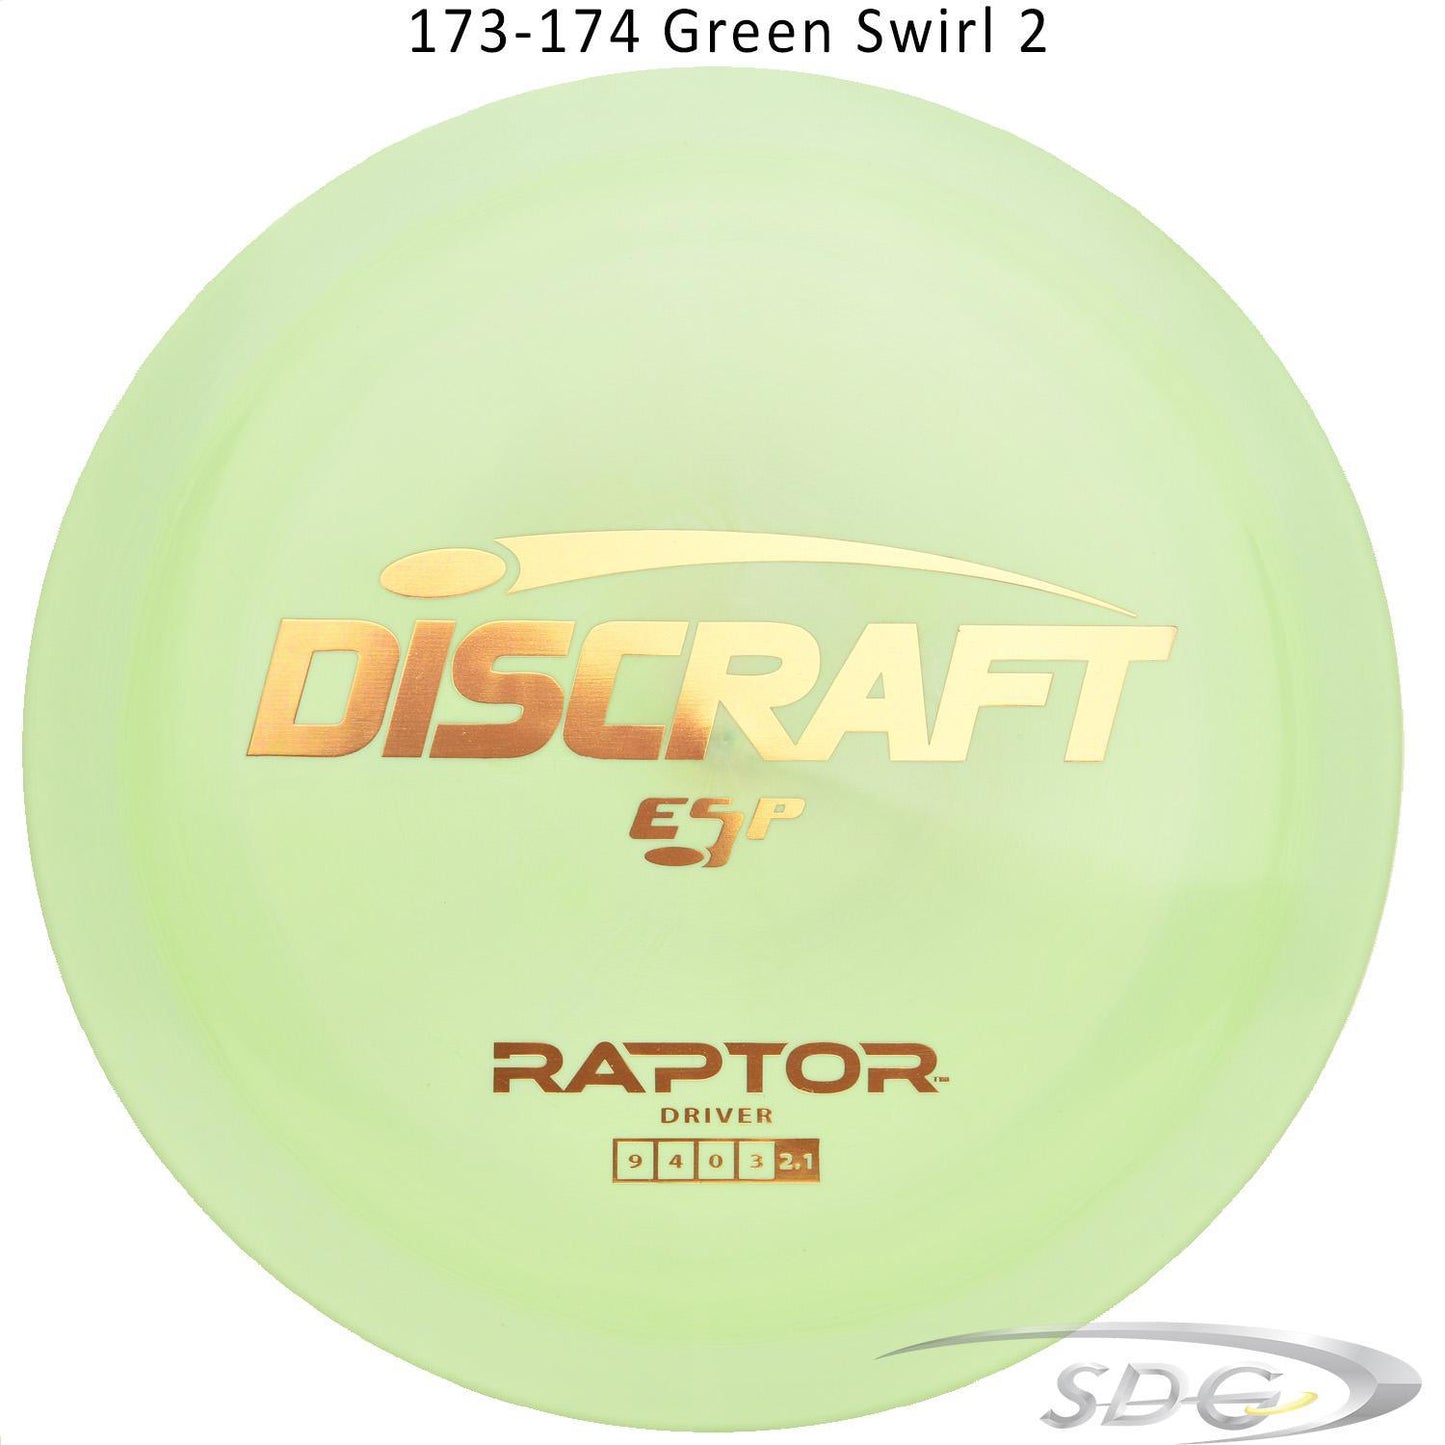 discraft-esp-raptor-disc-golf-distance-driver 173-174 Green Swirl 2 